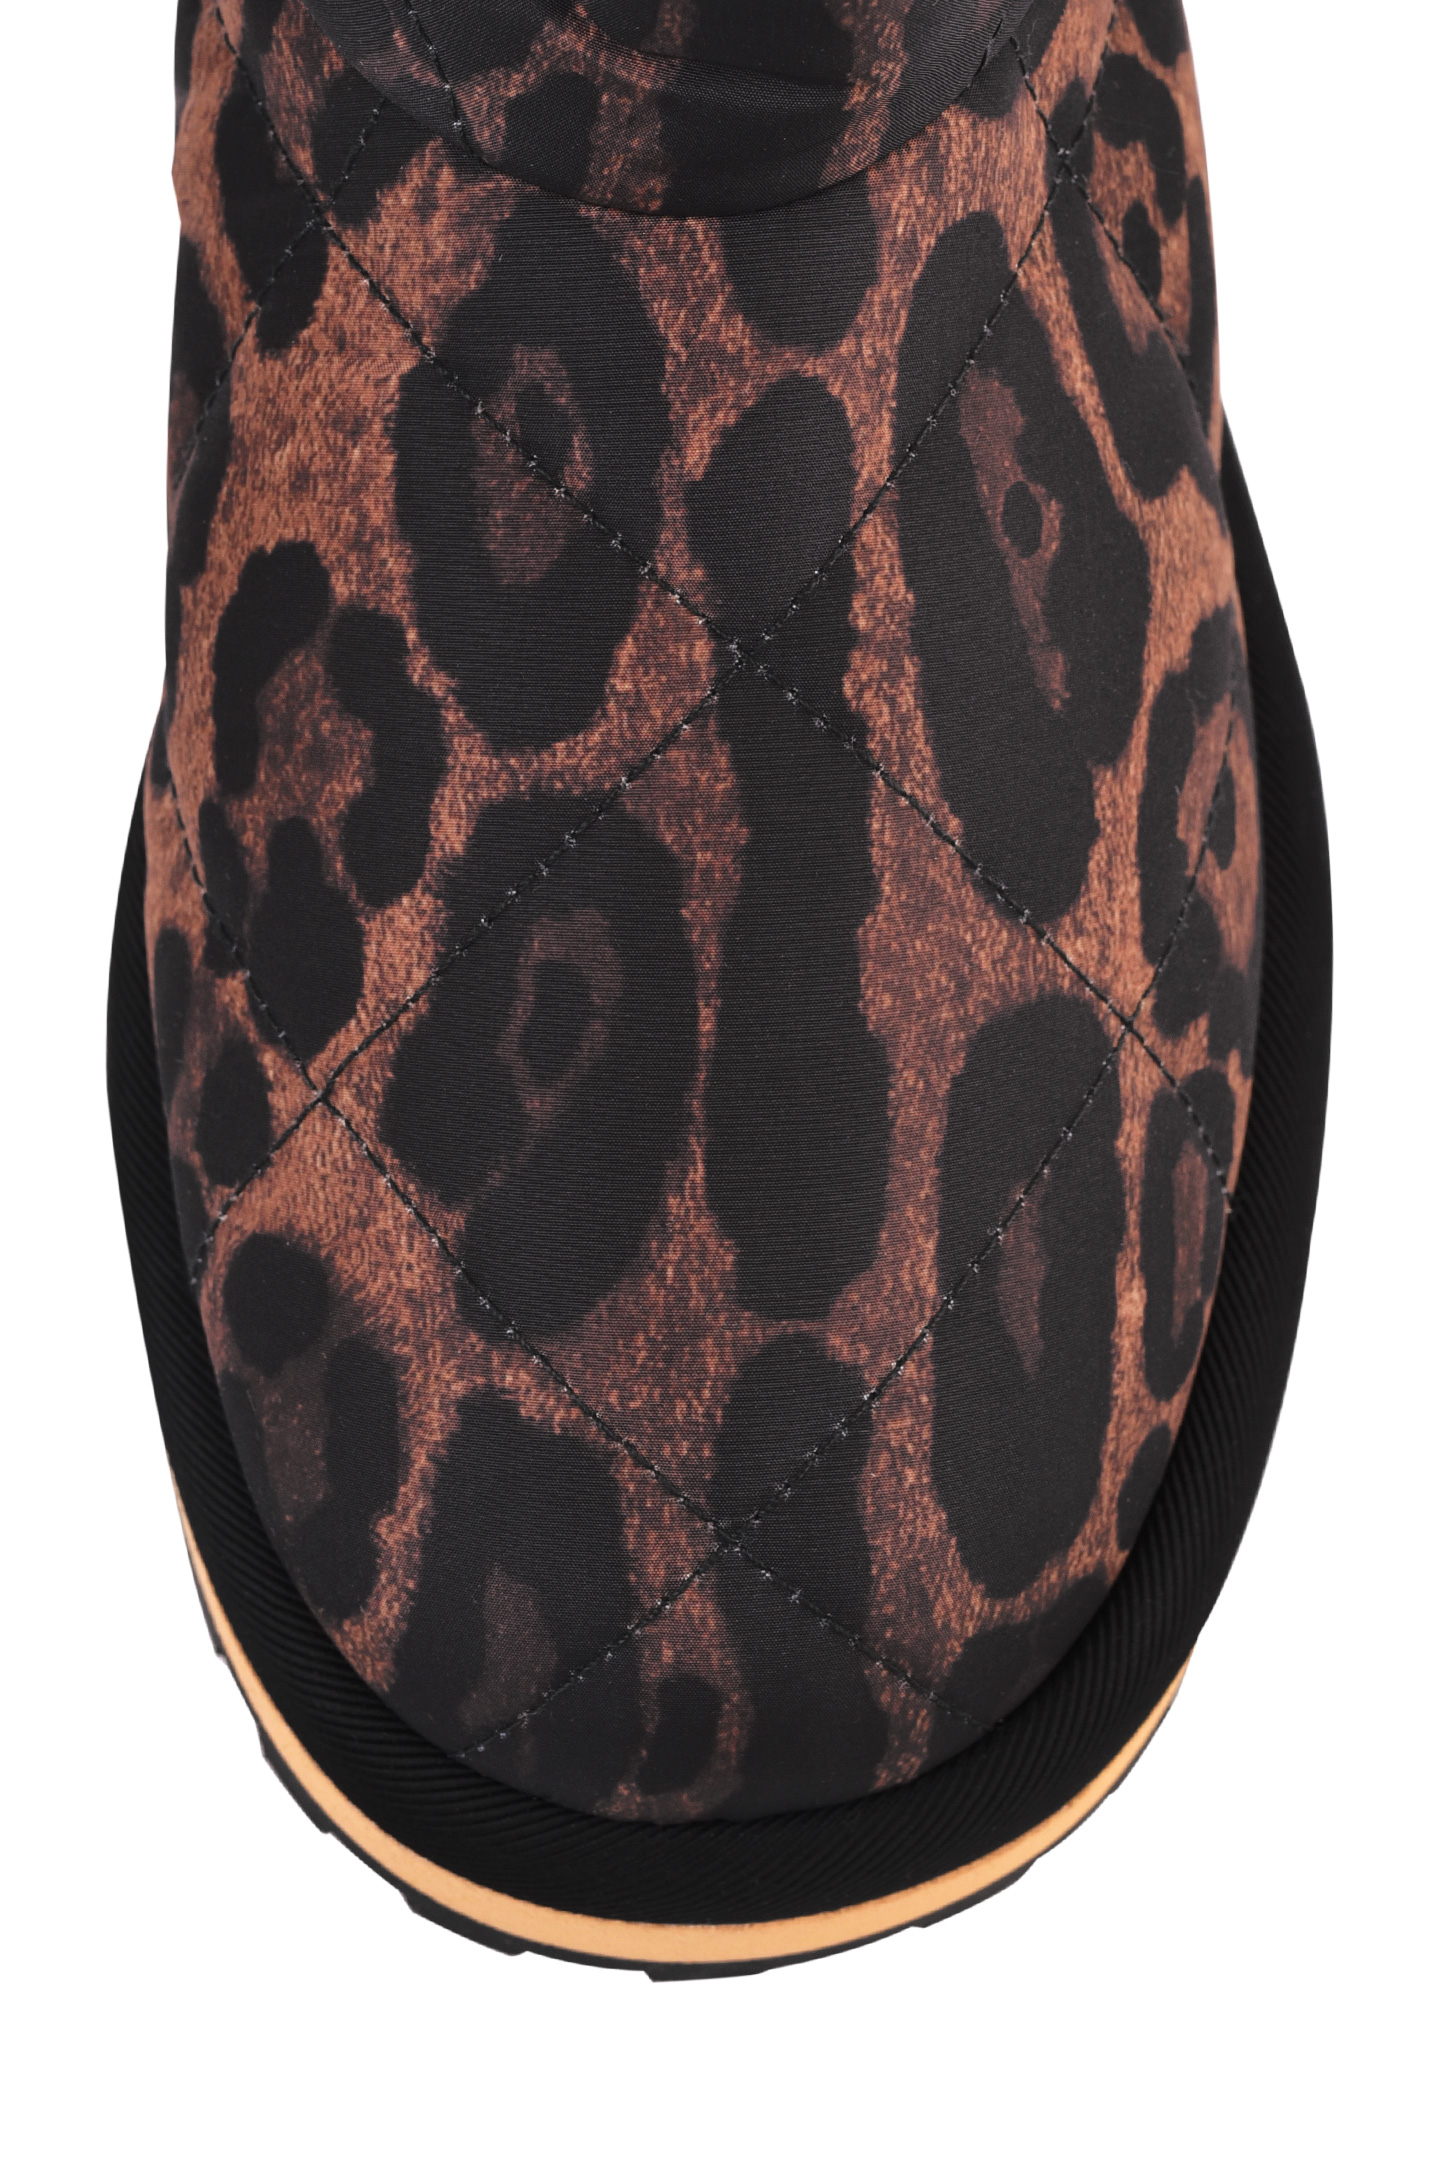 Сапоги DOLCE & GABBANA CK1893 AO868, цвет: Леопардовый, Женский